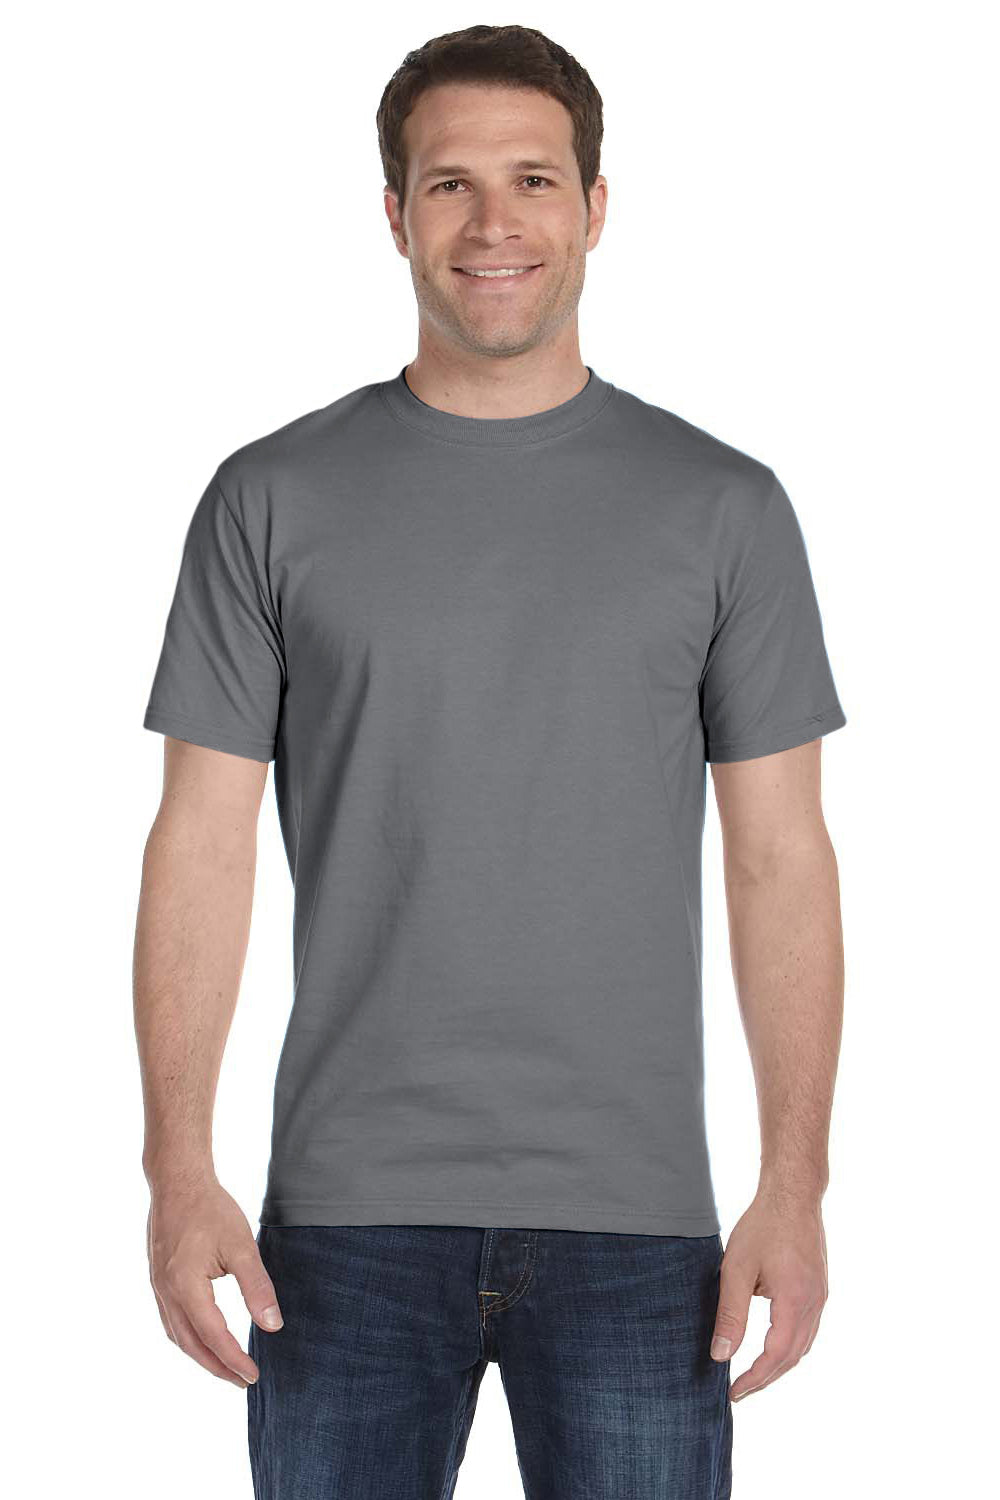 Gildan G800 Mens DryBlend Moisture Wicking Short Sleeve Crewneck T-Shirt Gravel Grey Front